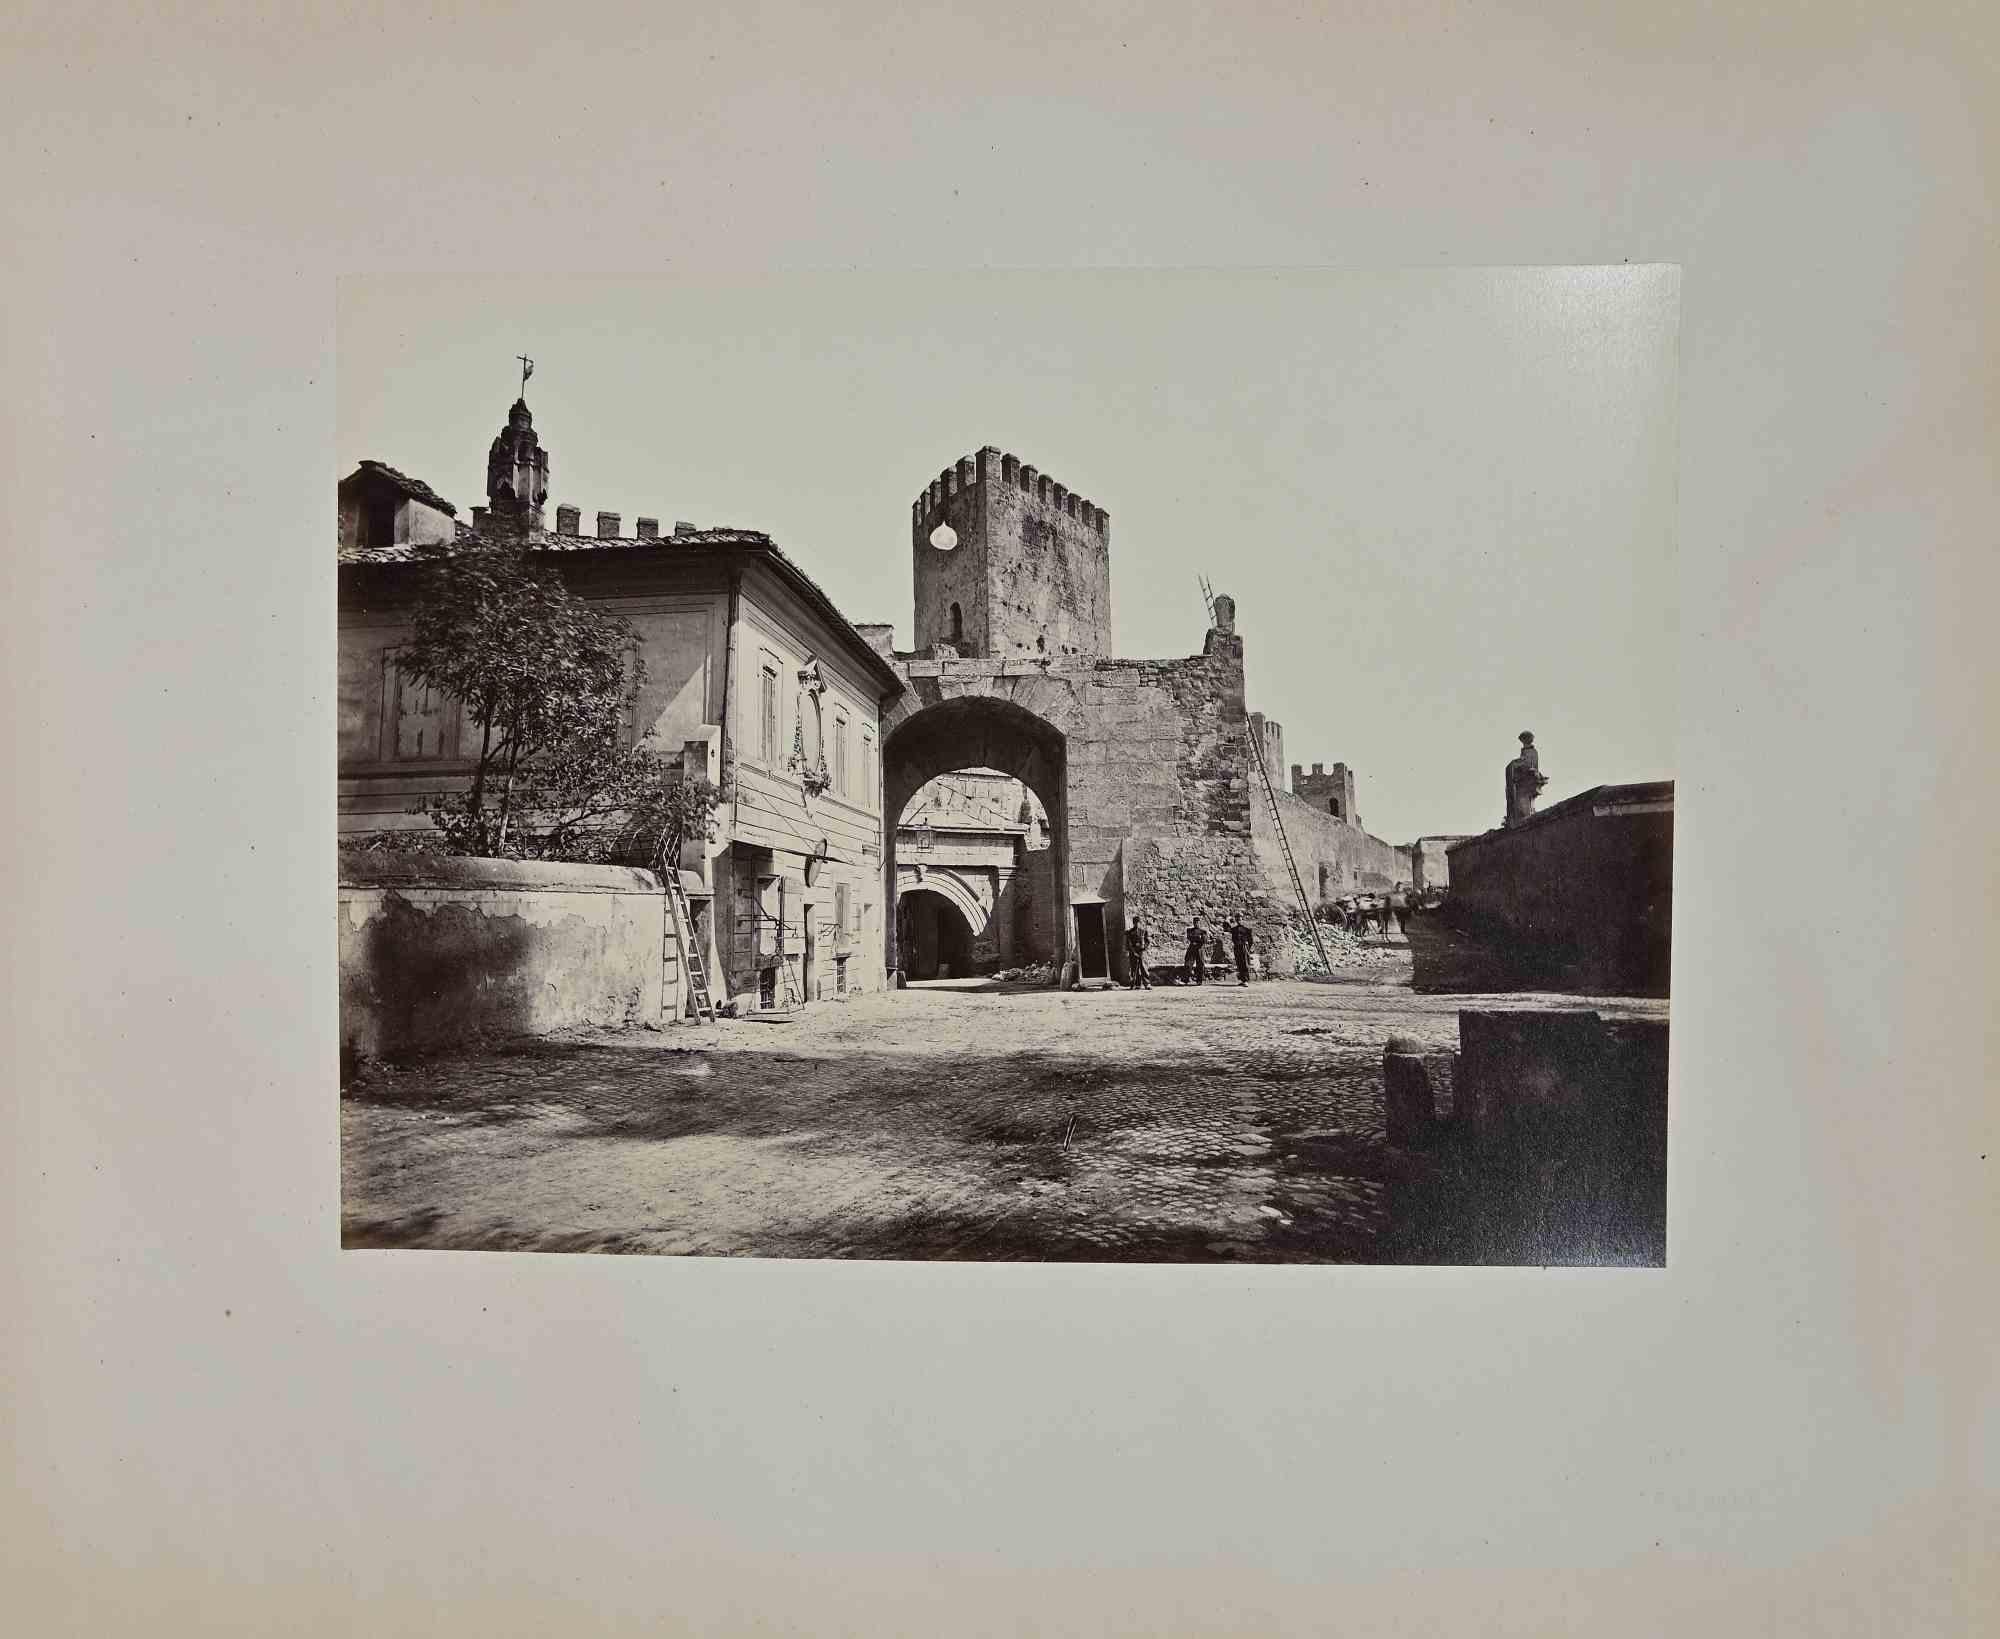 Vue des Monuments Paysages de Rome est une Photographie Vintage en noir et blanc sur papier réalisée par Francesco Sidoli photographe à la fin du 19ème siècle.

Bon état.